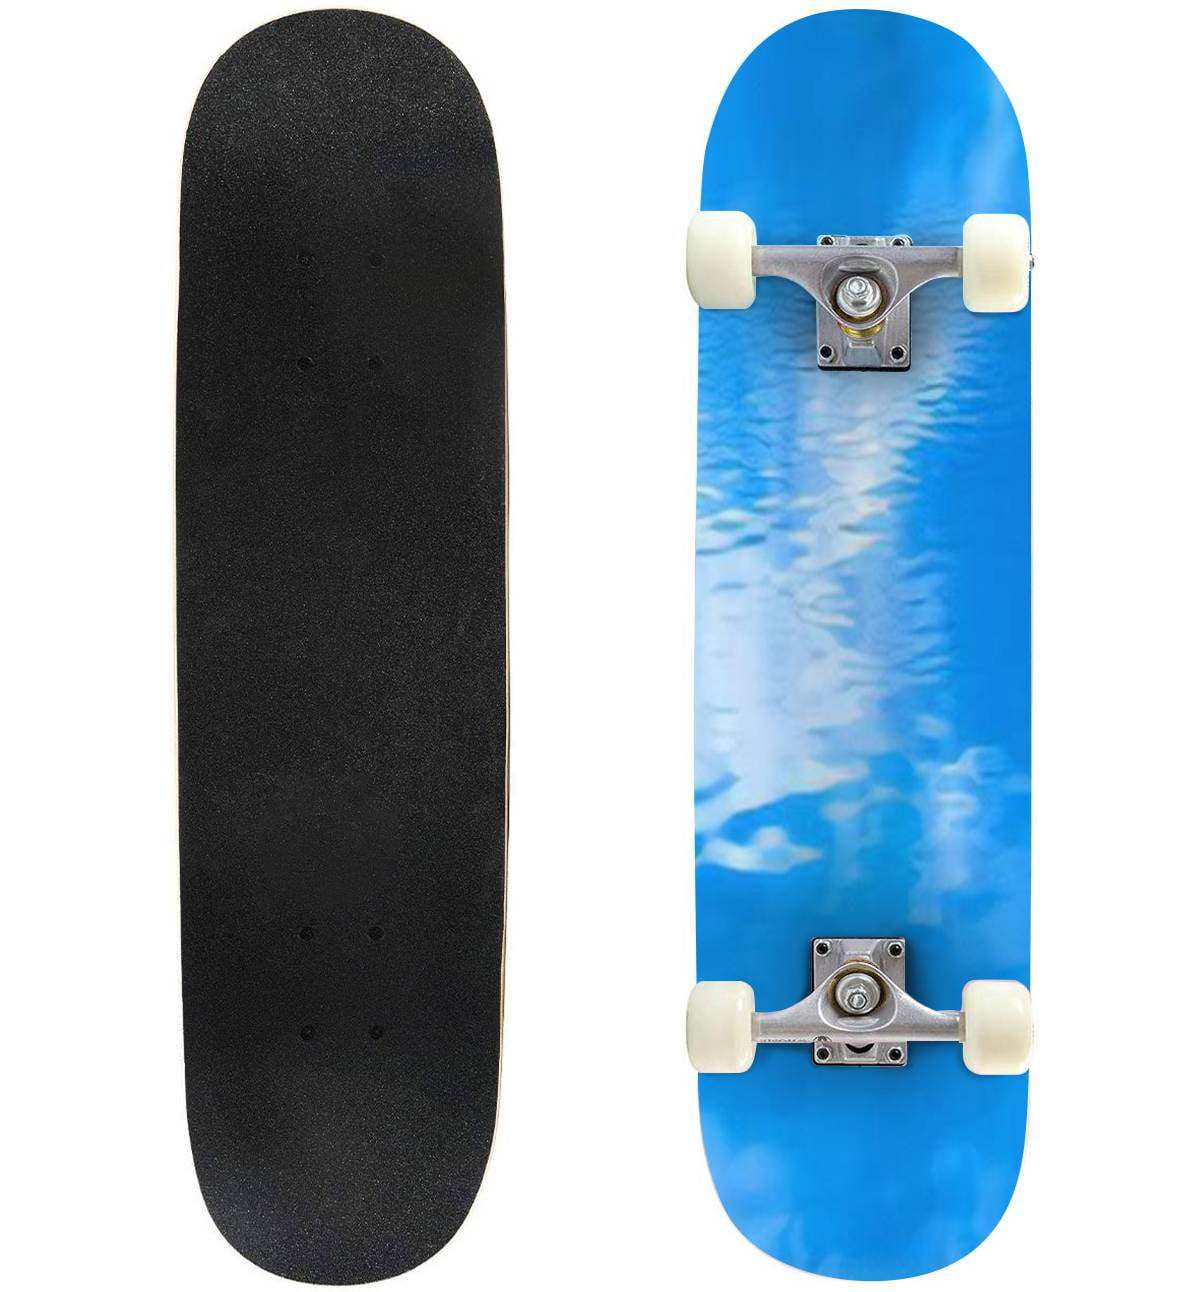 Misty Blue Background Outdoor Skateboard Longboards 31"x8" Skate Board Cruiser - Walmart.com